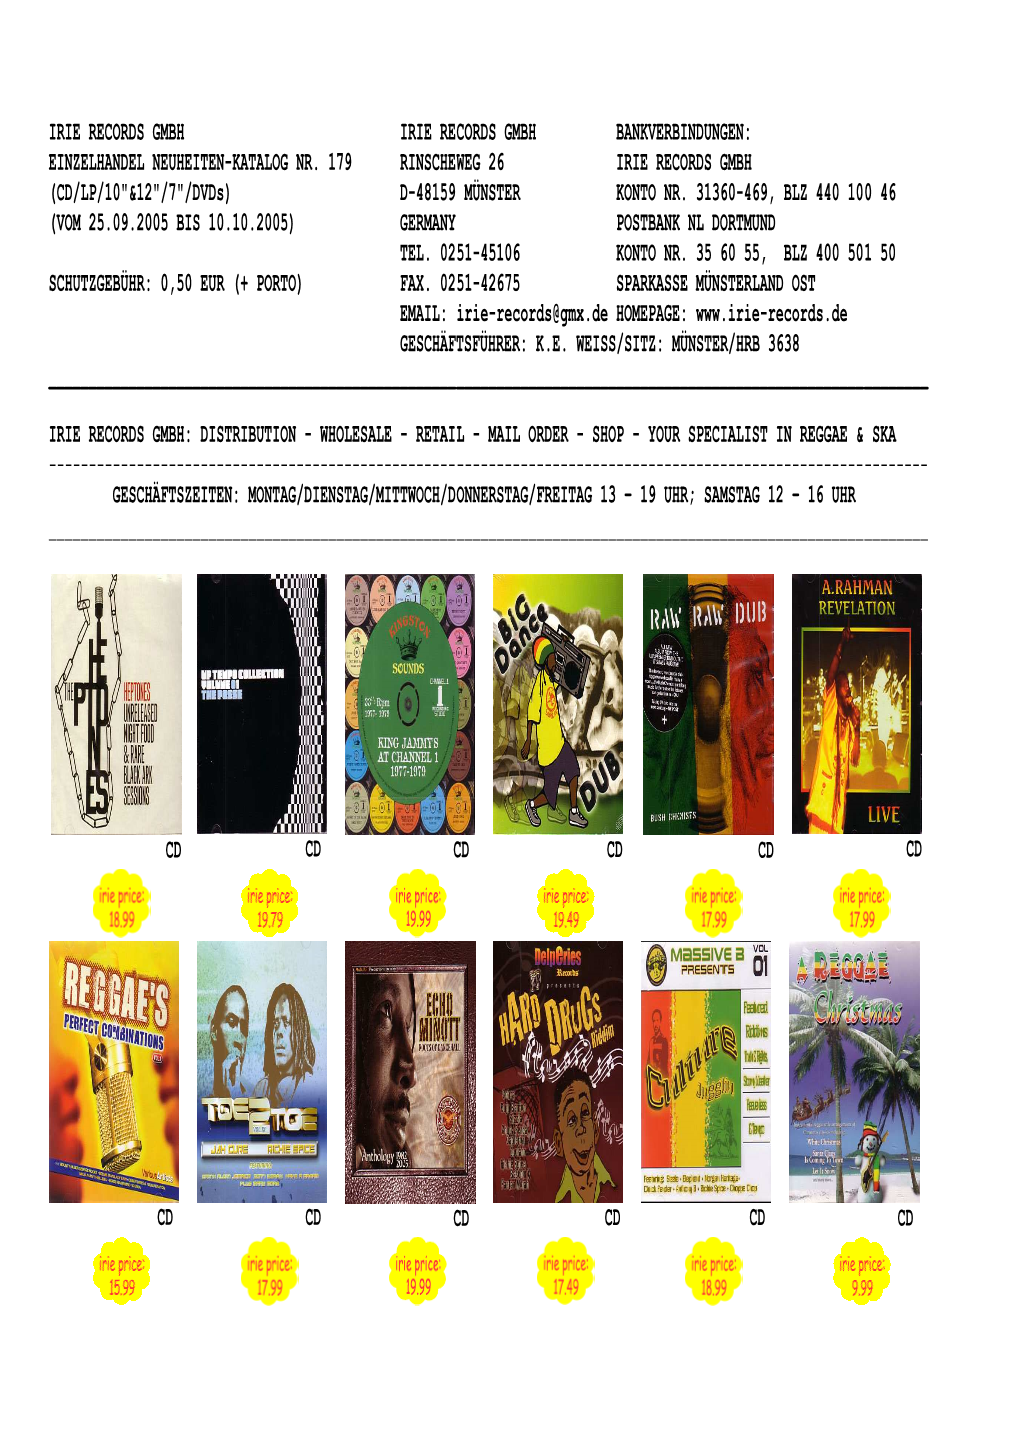 Neue Ware Mail-Order Katalog Einzelhandel 10-05 #1